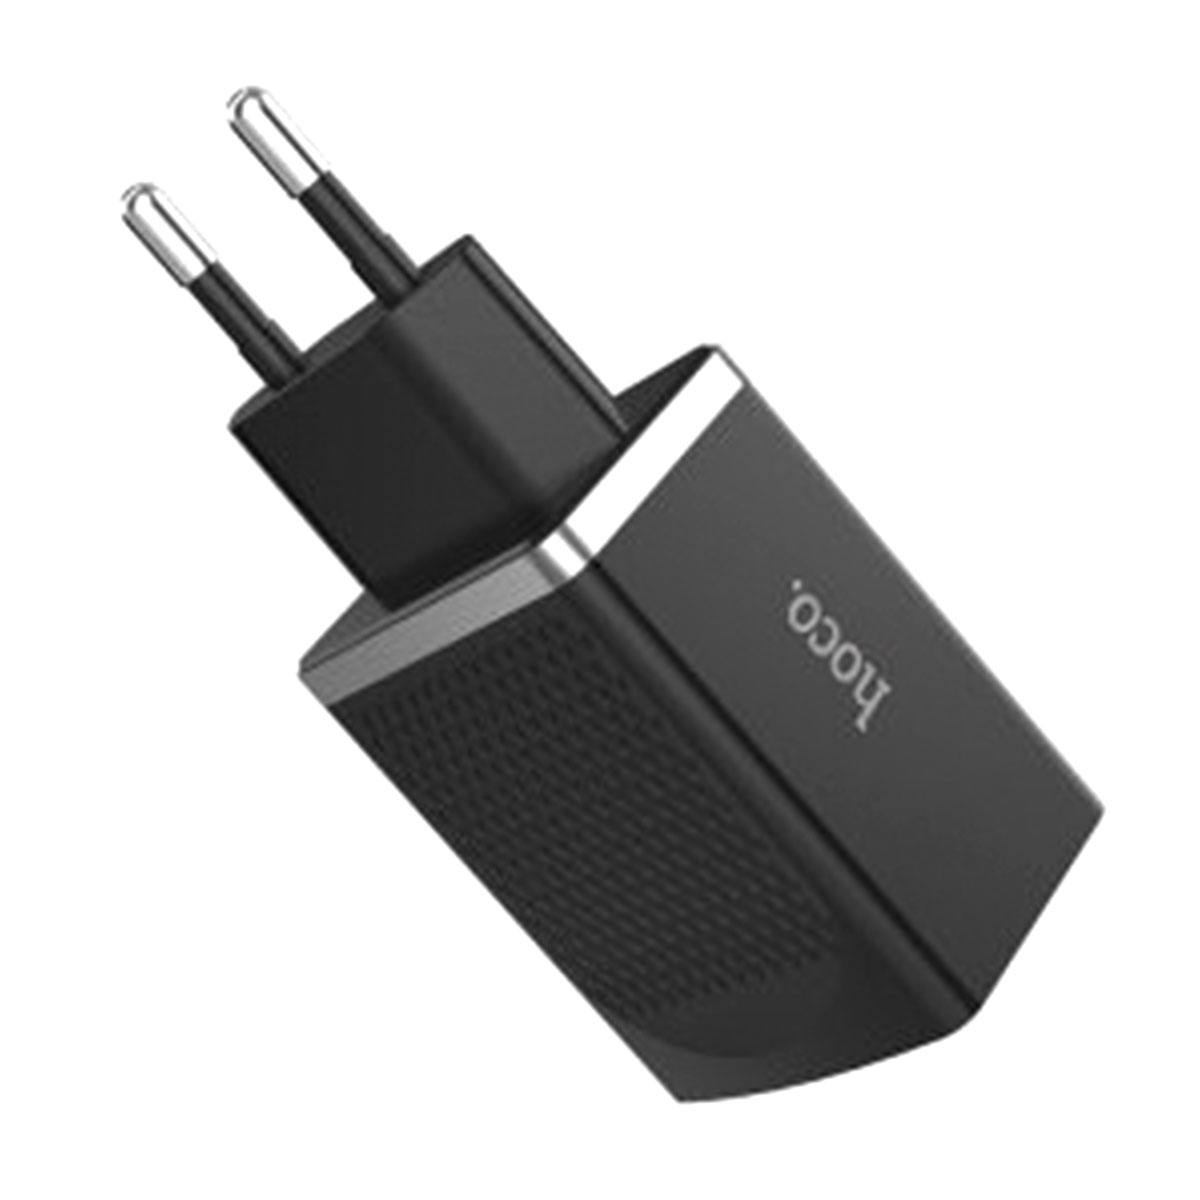 СЗУ (сетевое зарядное устройство) HOCO C43A Vast power, 2*USB разъема, 2.4A цвет черный